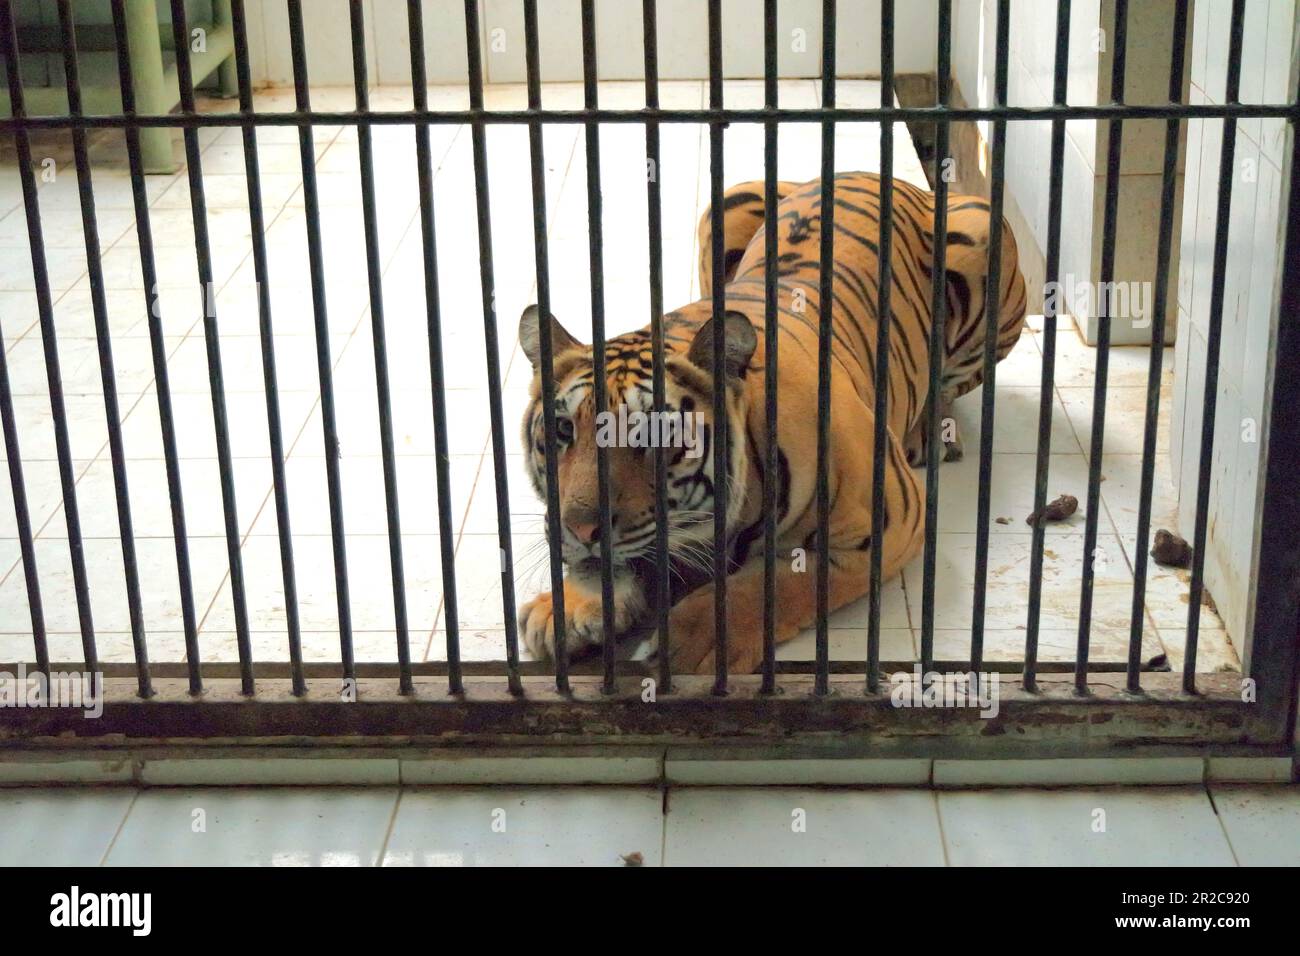 Ein Sumatra-Tiger (Panthera tigris sondaica) in der vom Zoo von Bali in Singapur, Sukawati, Gianyar, Bali, Indonesien verwalteten Veterinäreinrichtung. Stockfoto